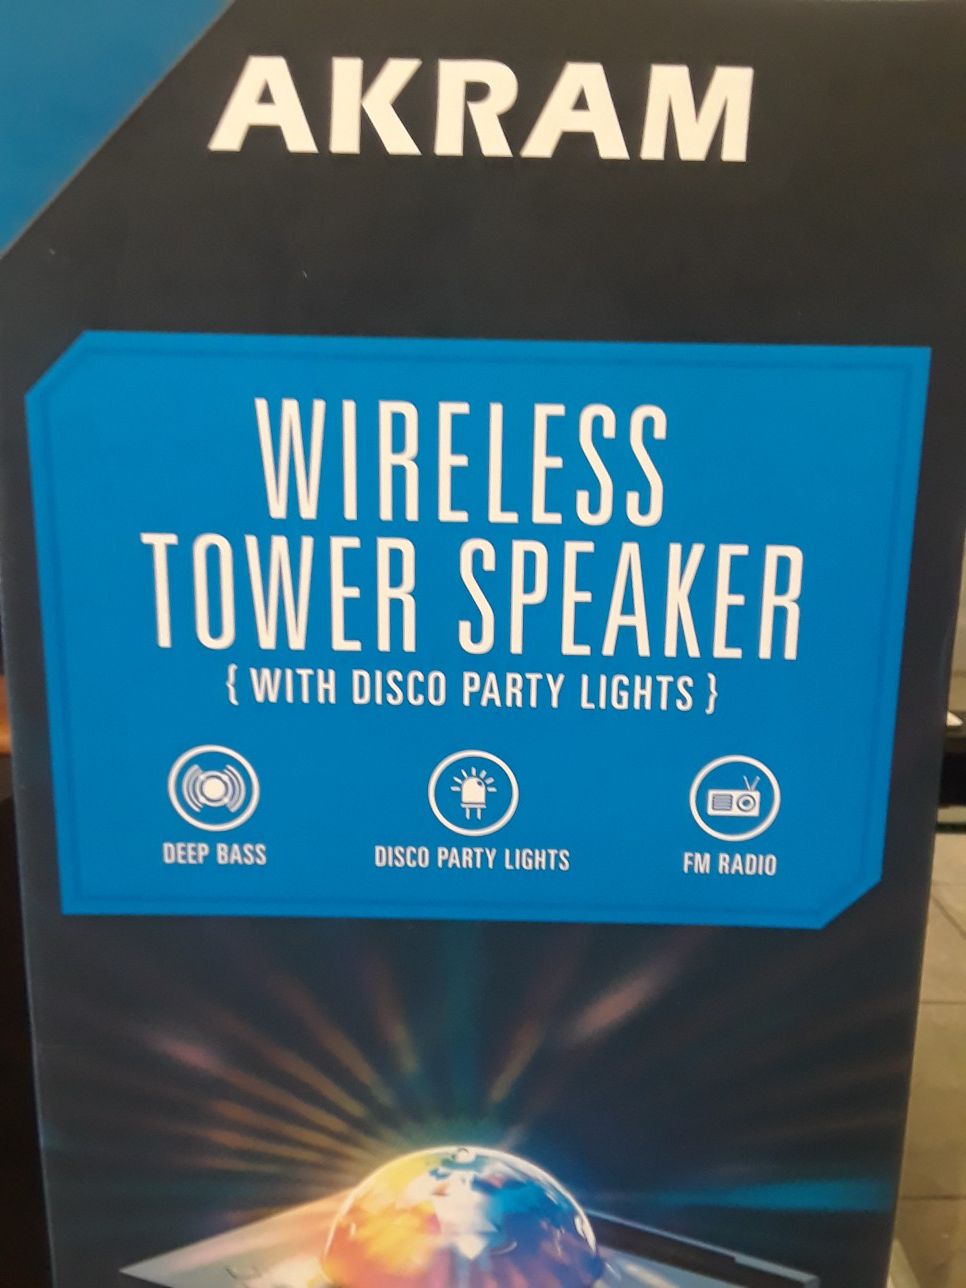 Akram tower speaker